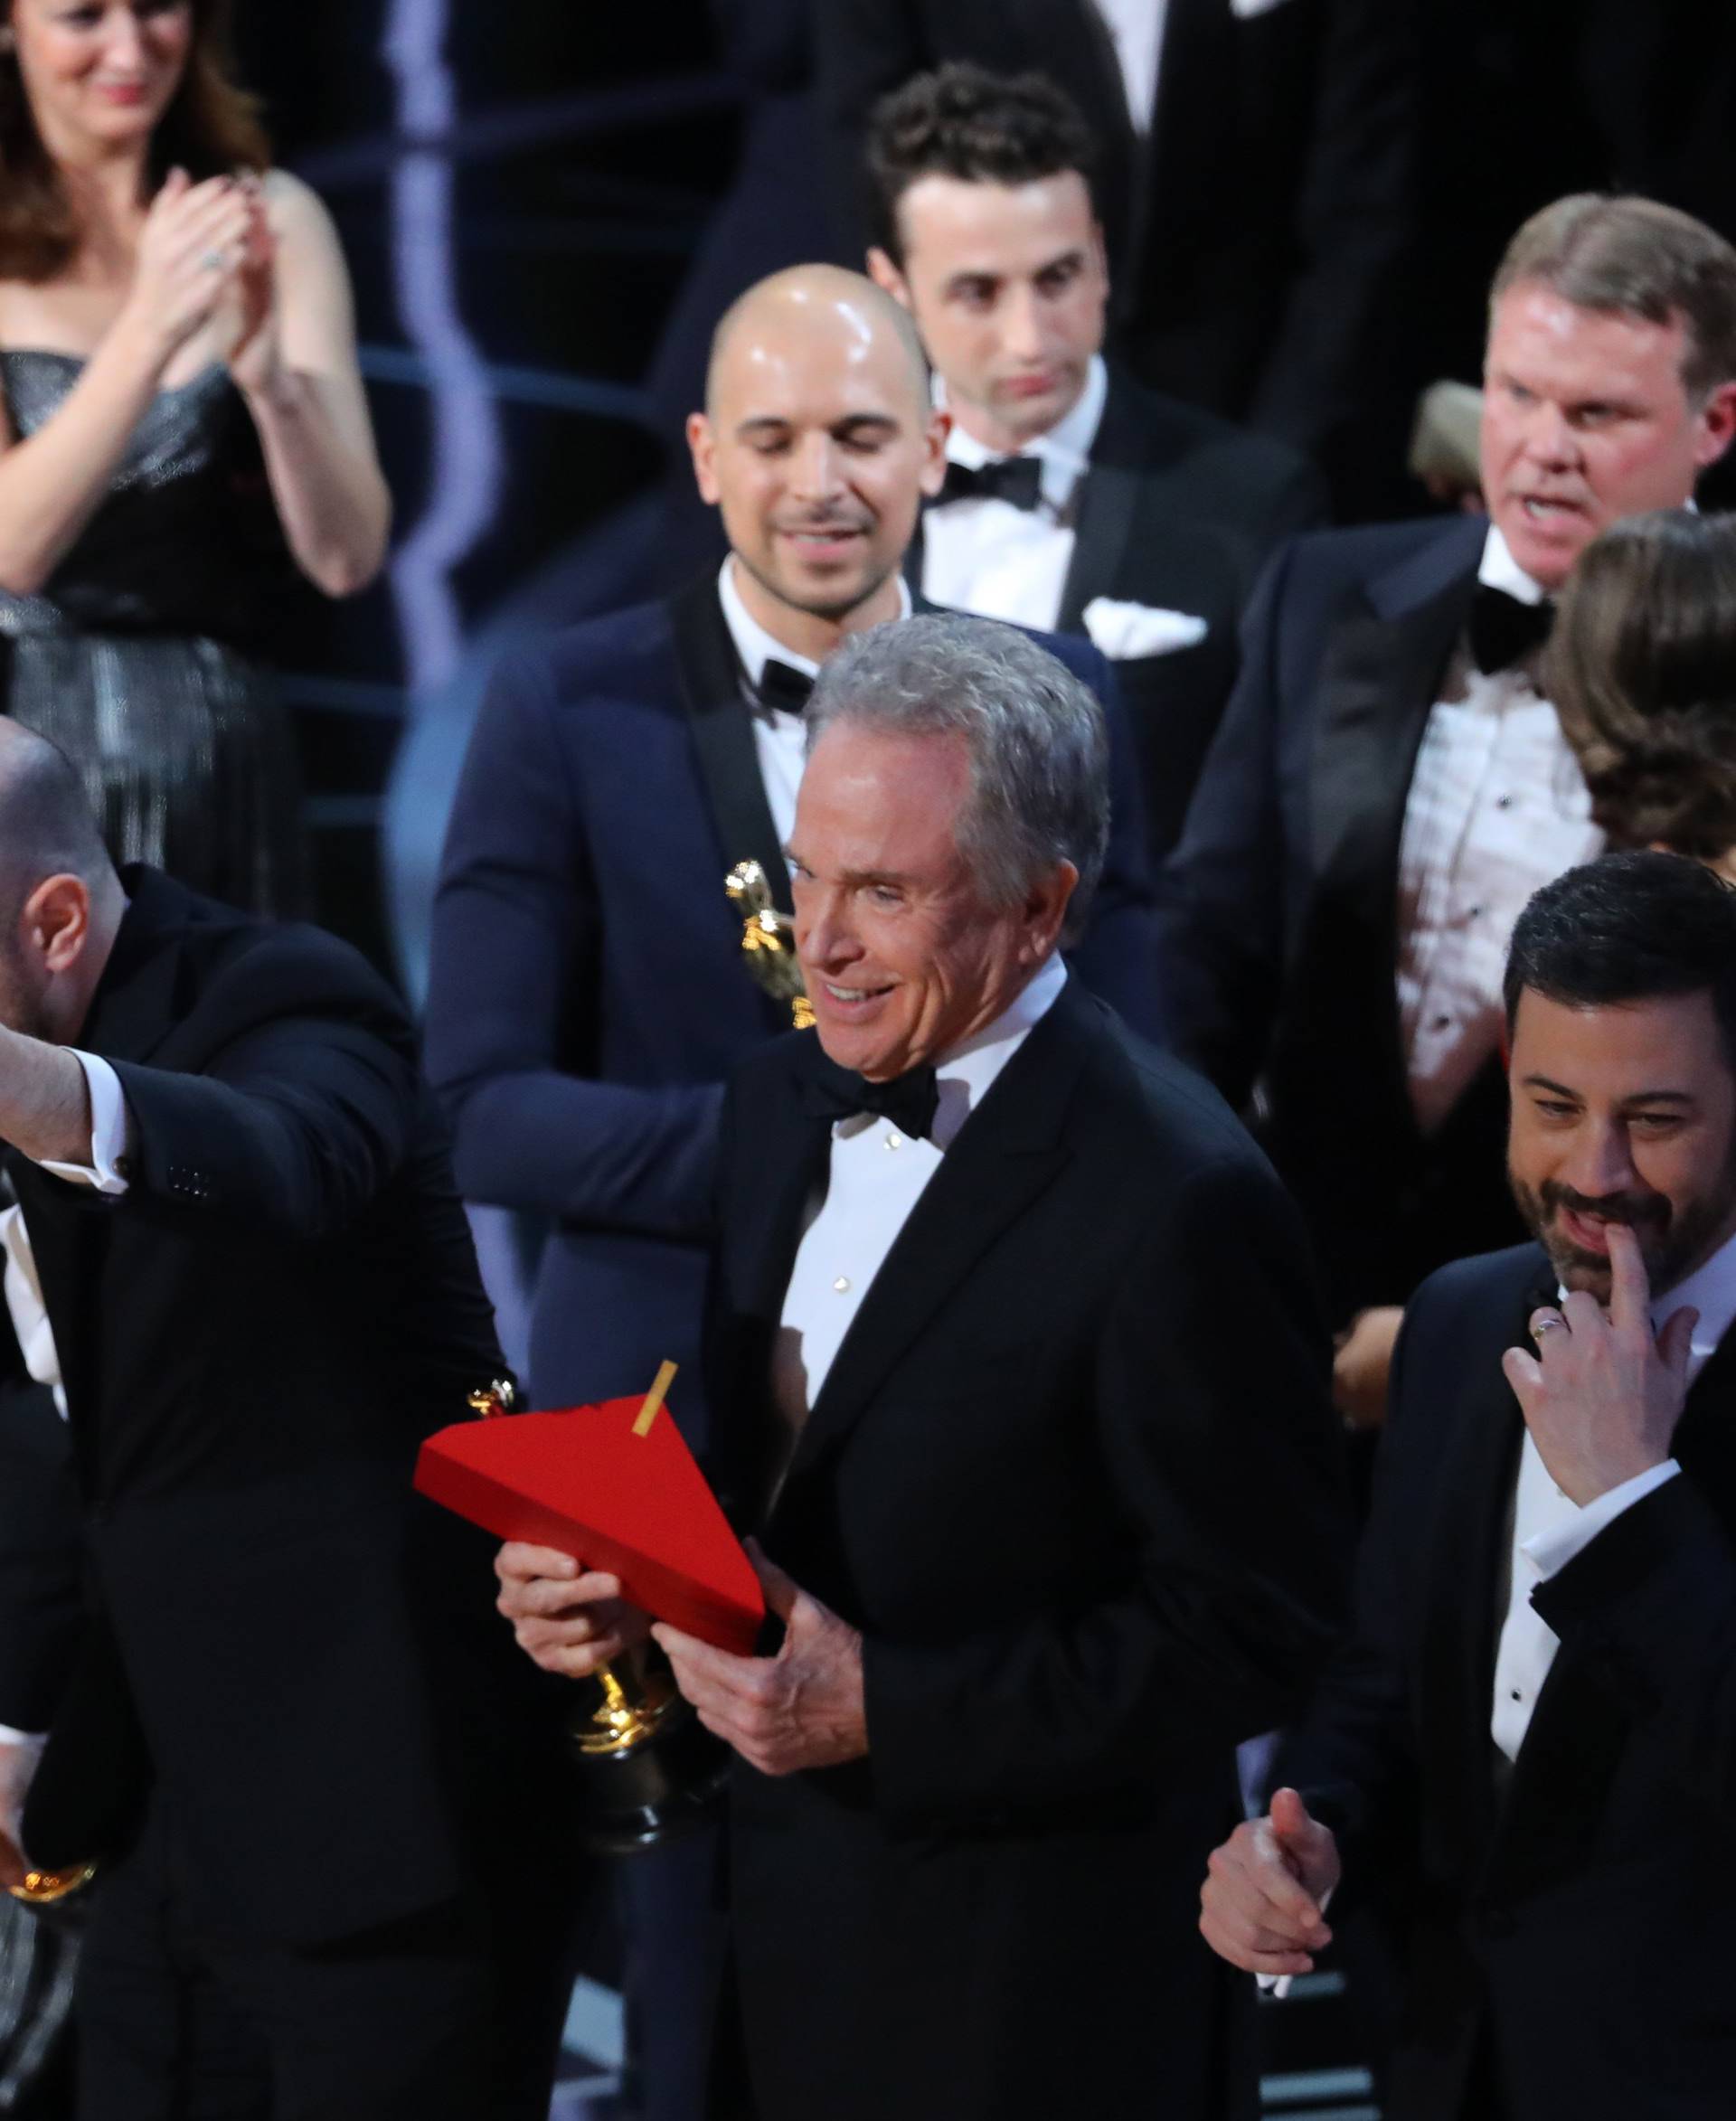 89th Academy Awards - Oscars Awards Show